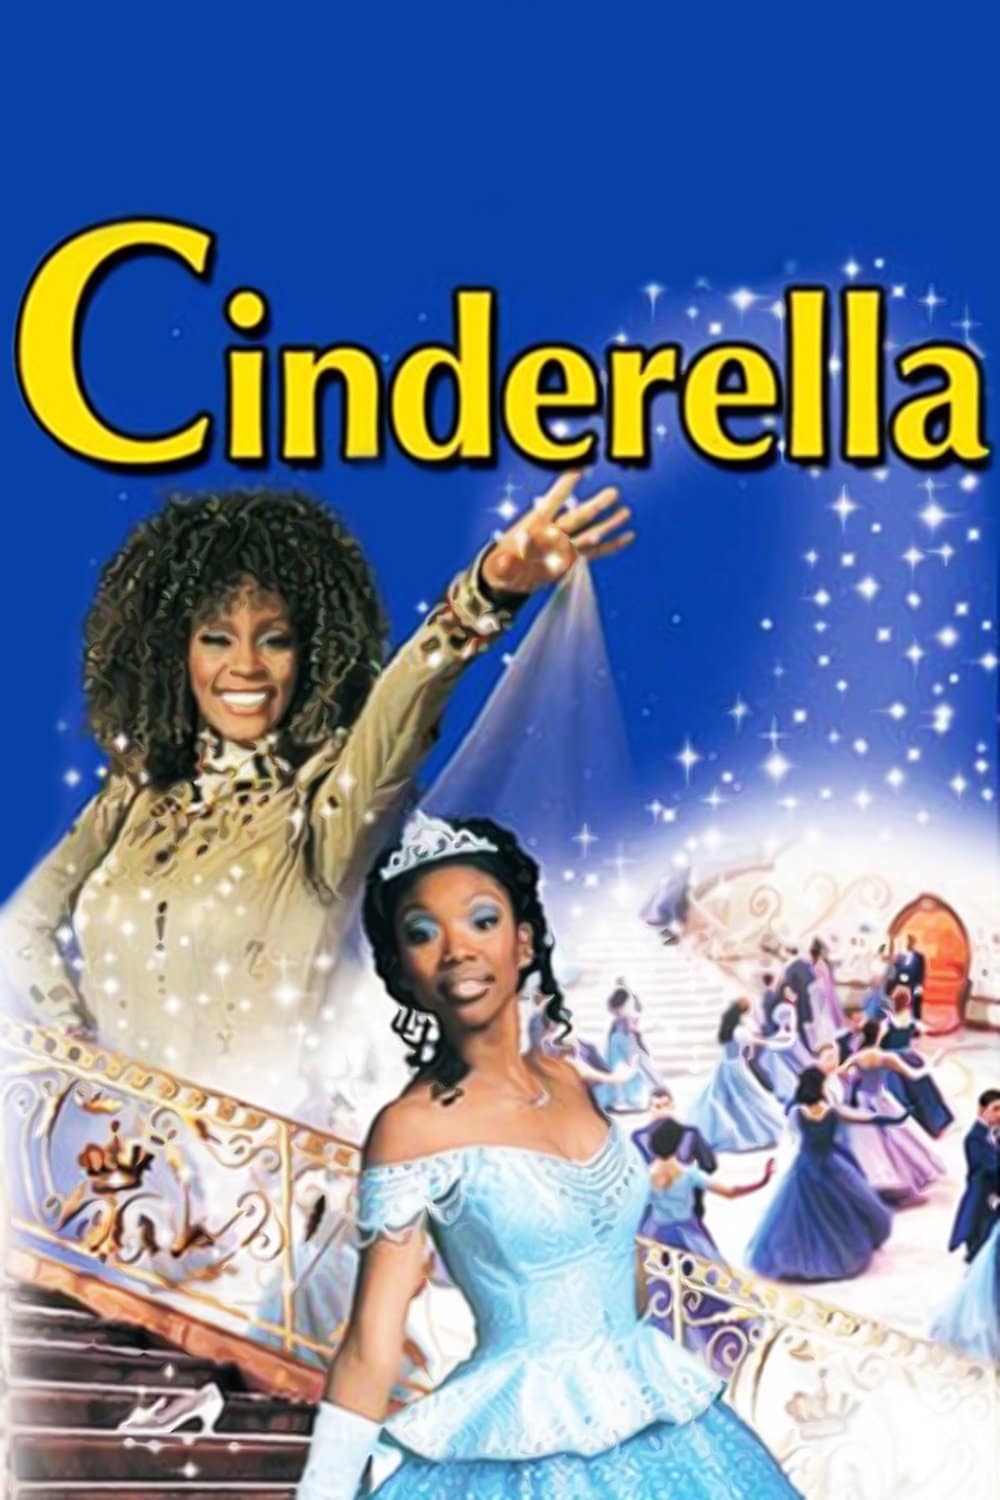 Plakat von "Cinderella"